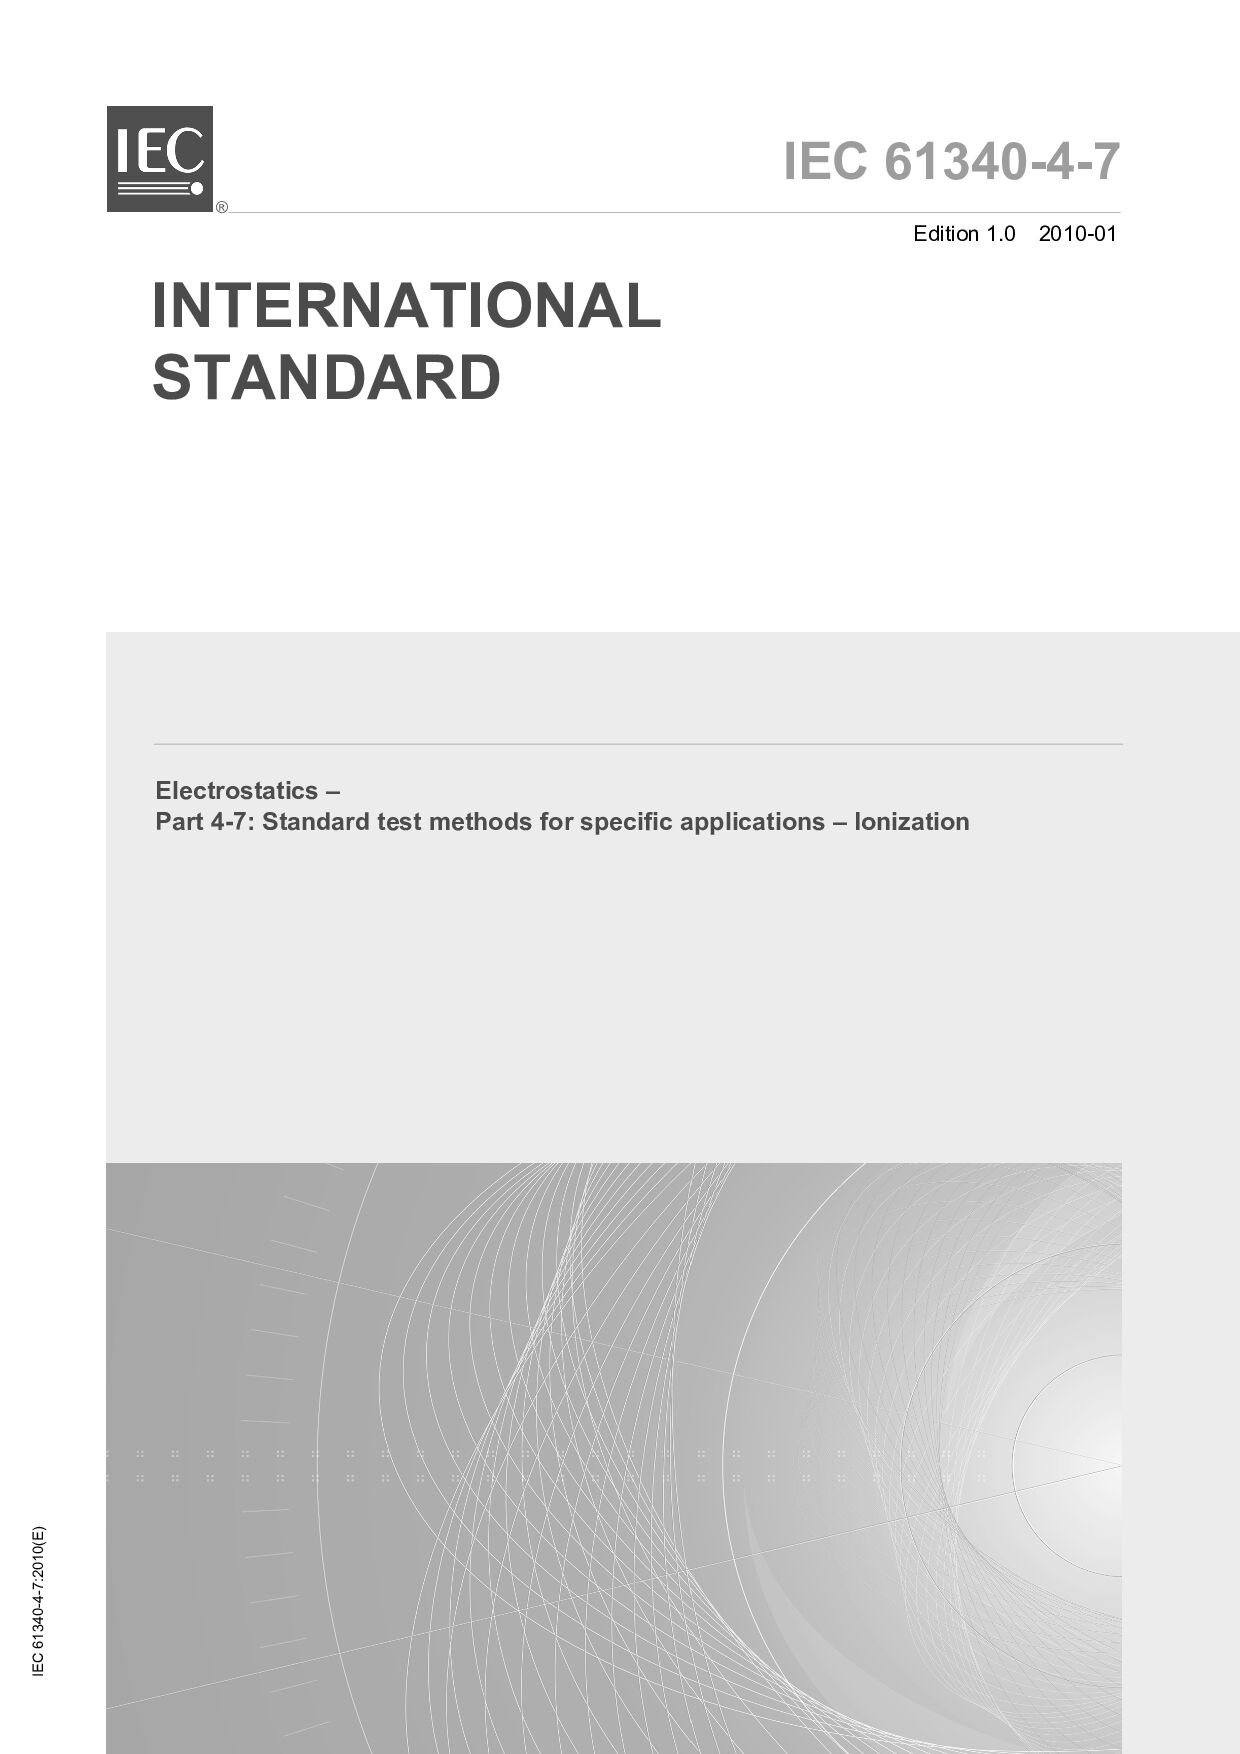 IEC 61340-4-7:2010封面图